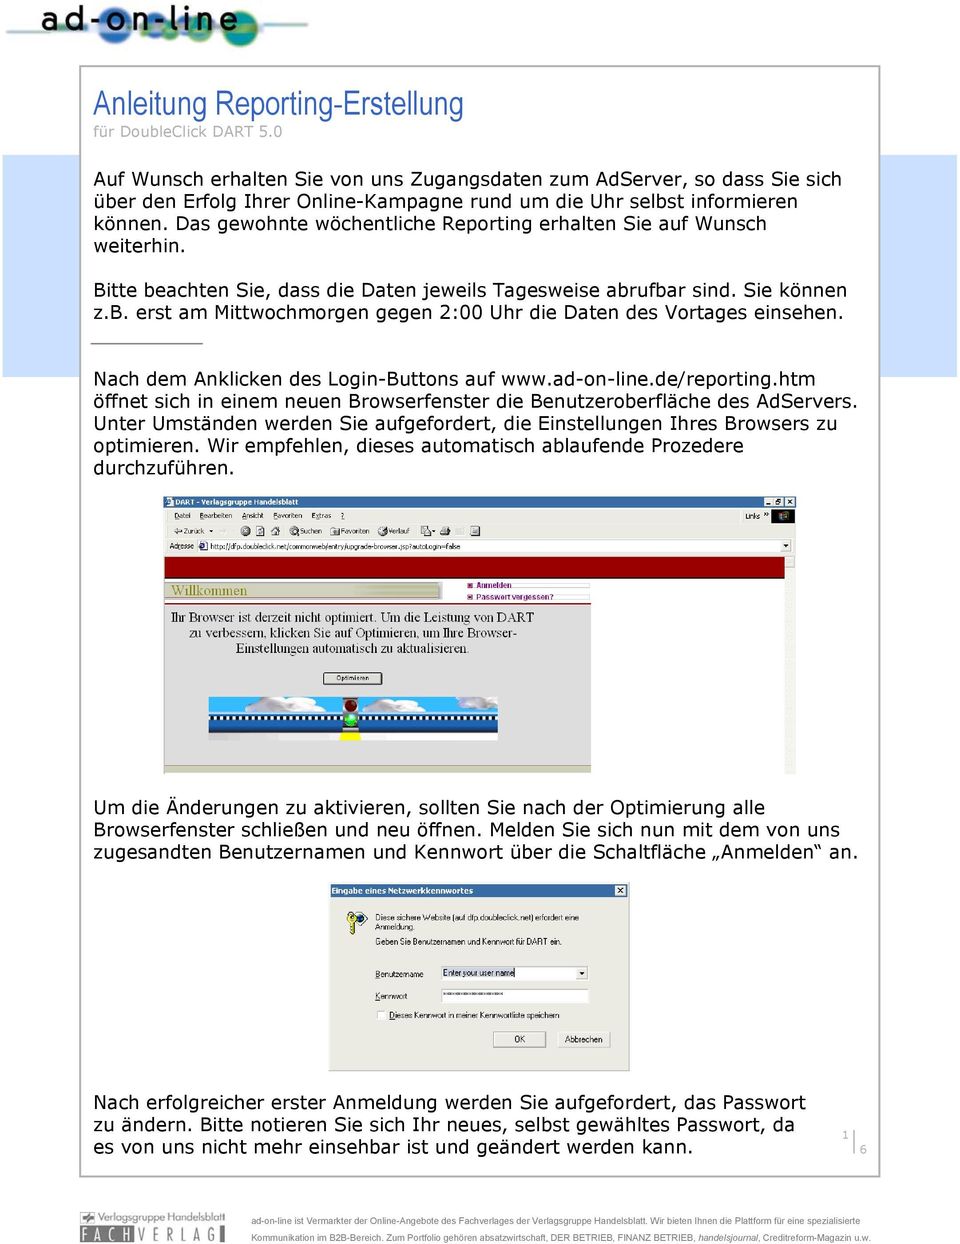 Nach dem Anklicken des Login-Buttons auf www.ad-on-line.de/reporting.htm öffnet sich in einem neuen Browserfenster die Benutzeroberfläche des AdServers.